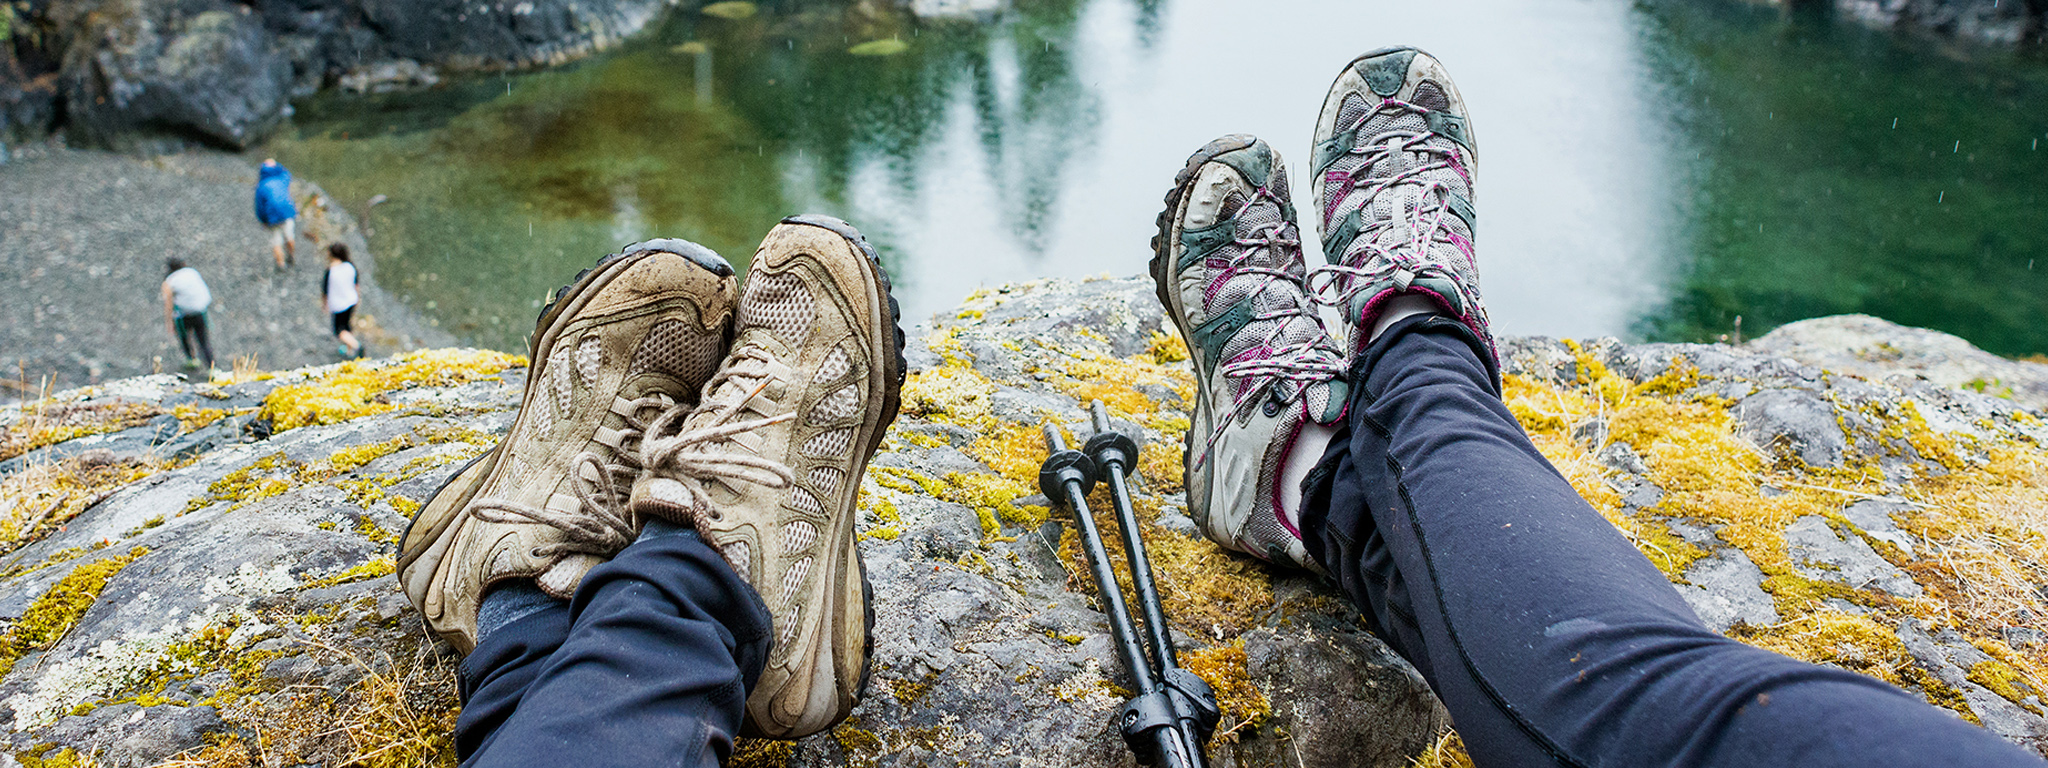 Les pieds de deux personnes pendent au bord d’un rocher surplombant un lac.